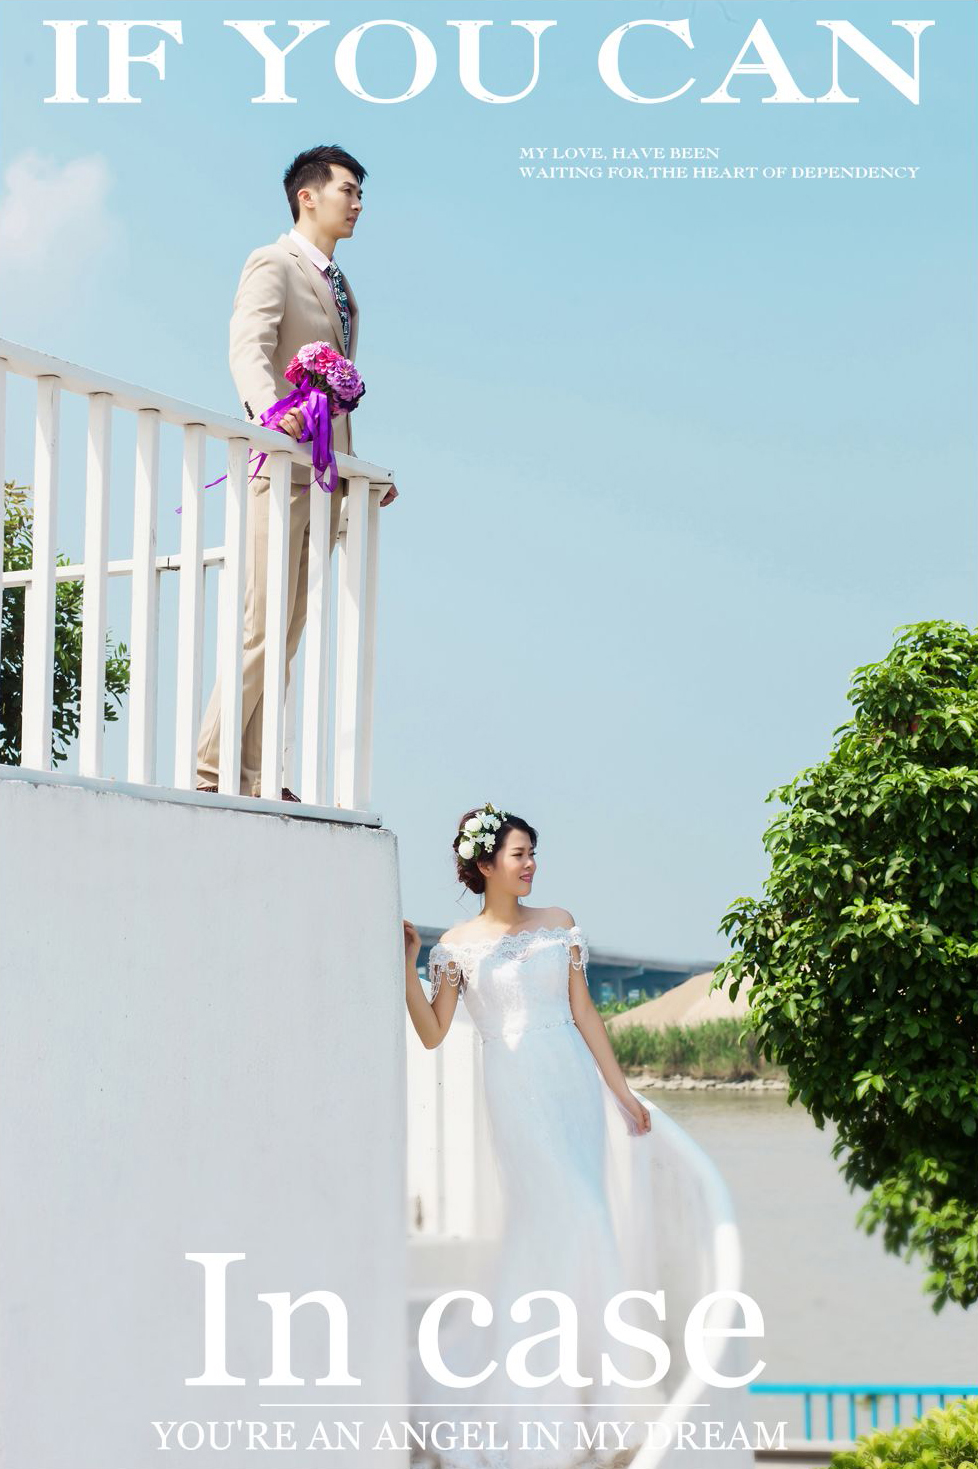 2017年7月广州结婚照,广州婚纱照,婚纱照图片